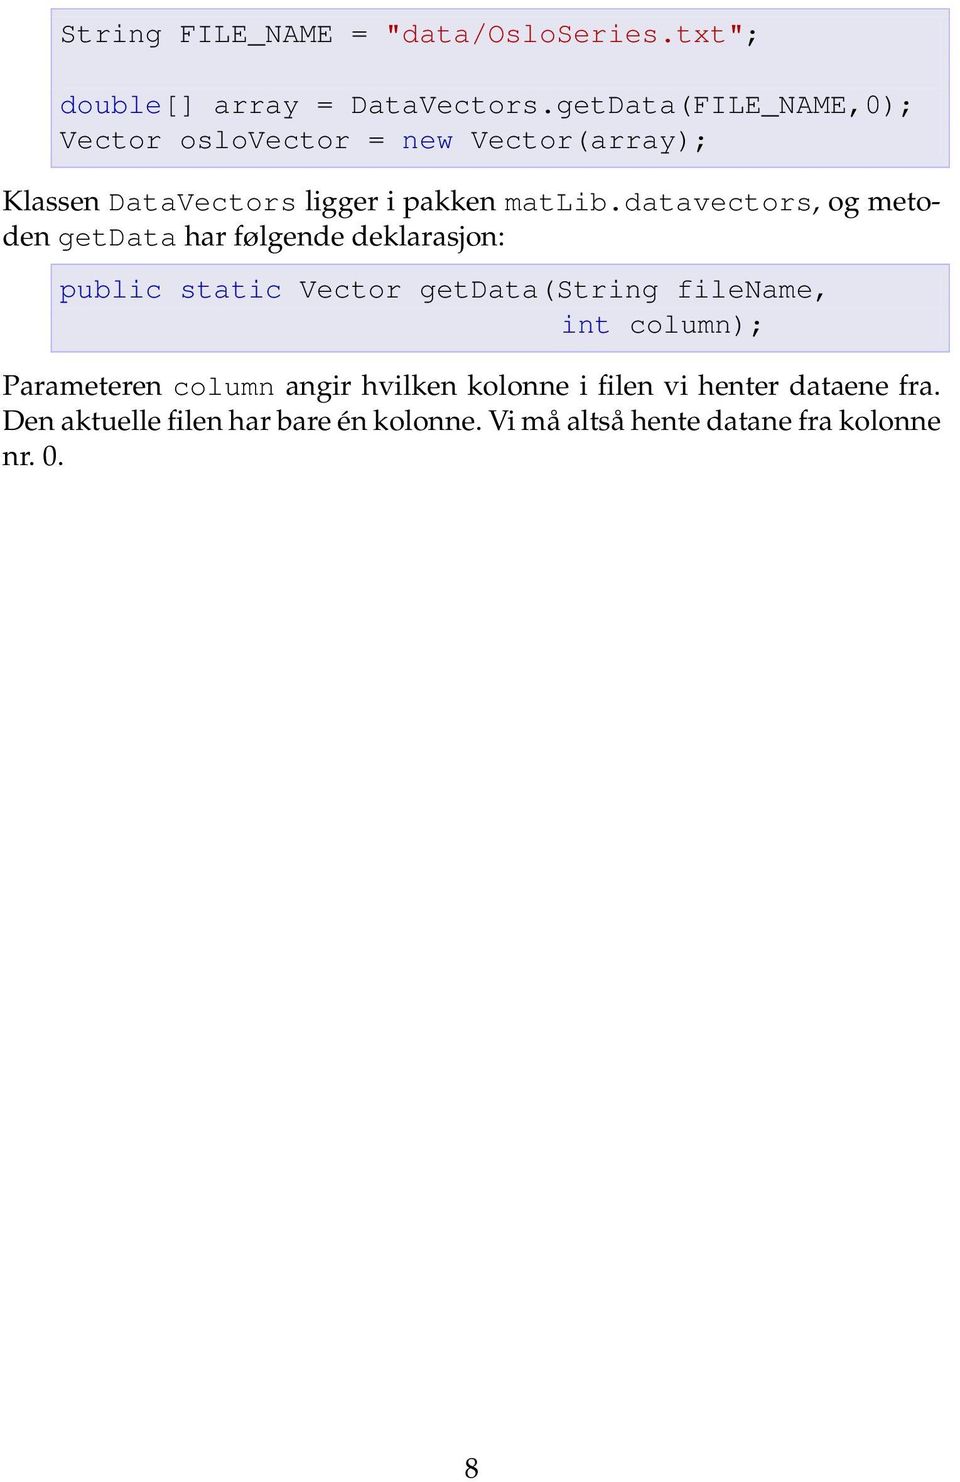 datavectors, og metoden getdata har følgende deklarasjon: public static Vector getdata(string filename, int